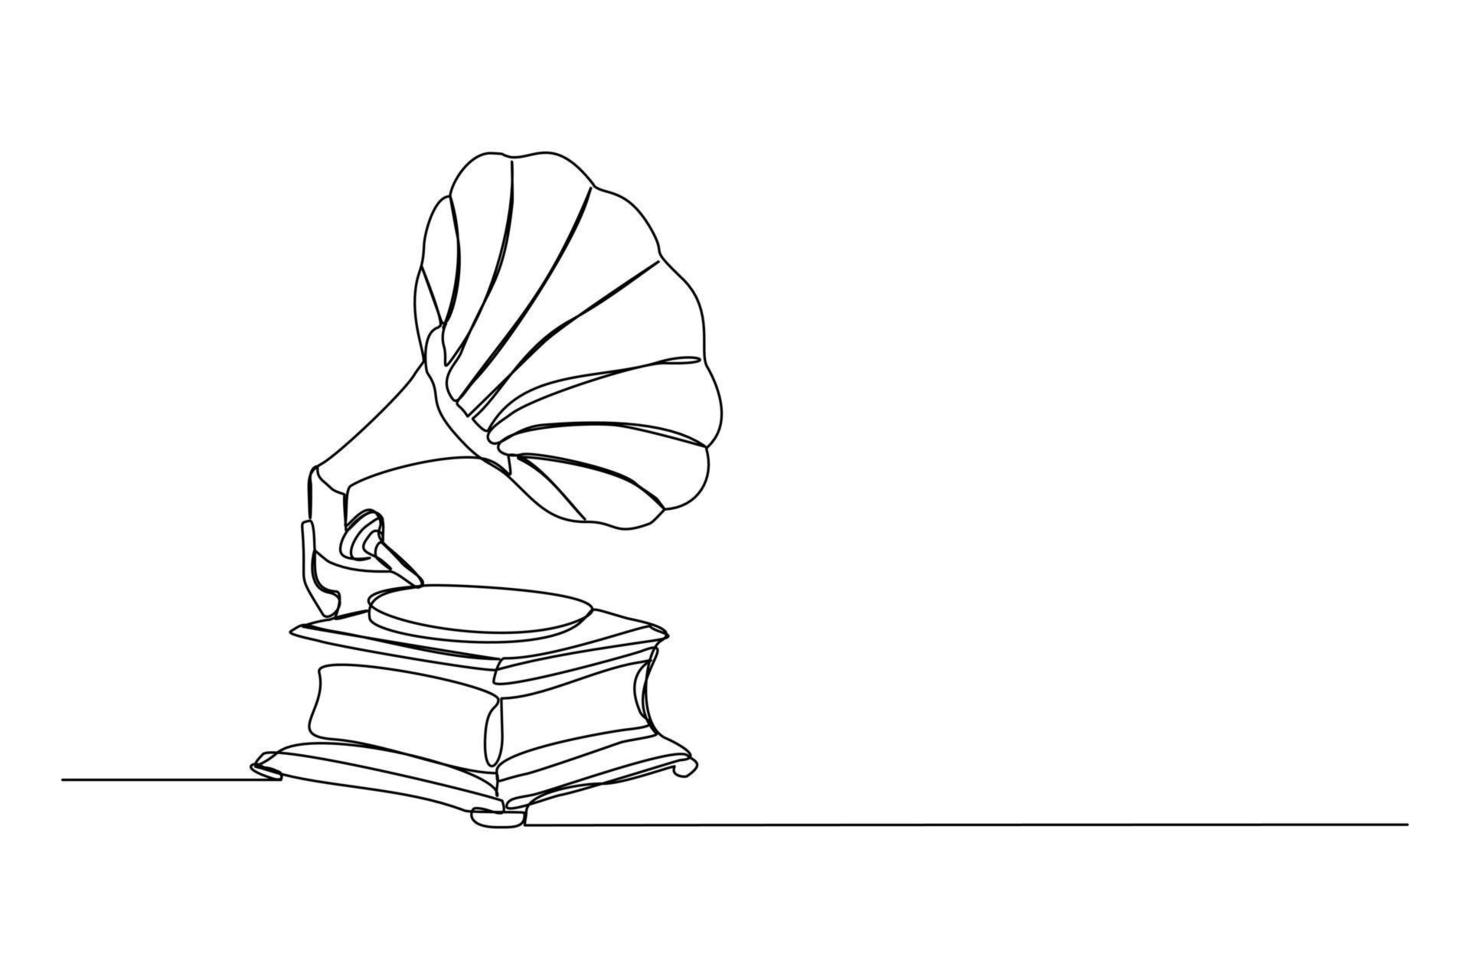 disegno a linea continua del vecchio grammofono analogico retrò con scrivania in vinile. singola linea d'arte del concetto di lettore musicale vintage antico. illustrazione vettoriale di progettazione di strumenti musicali